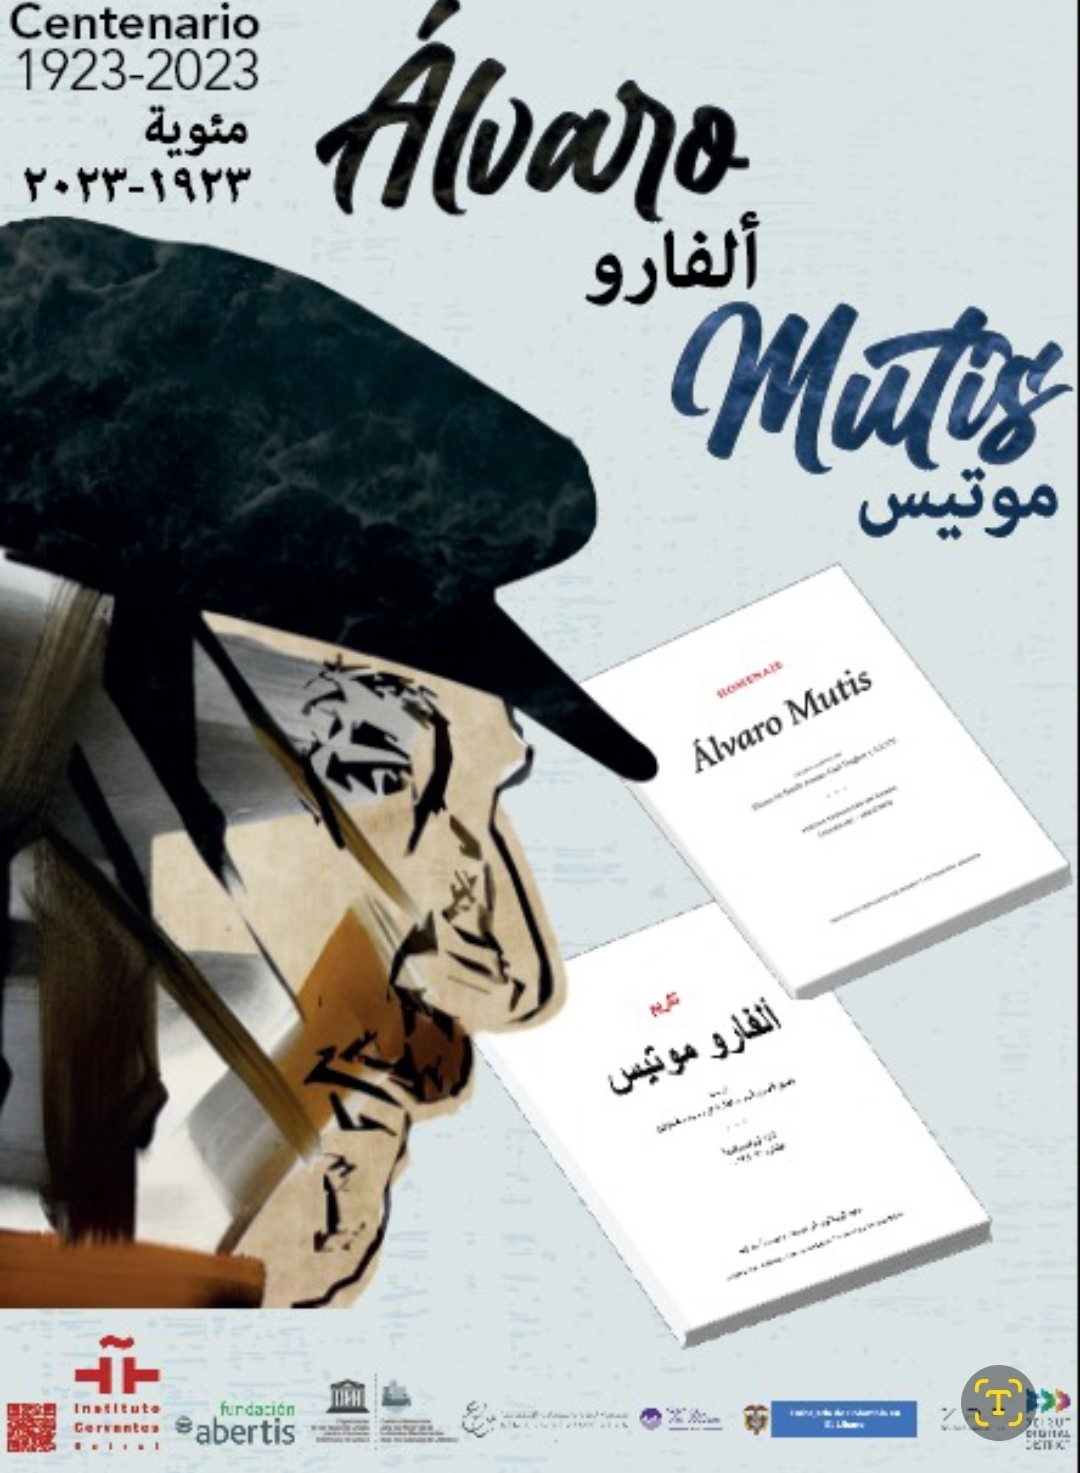 La obra literaria de Álvaro Mutis en idioma árabe